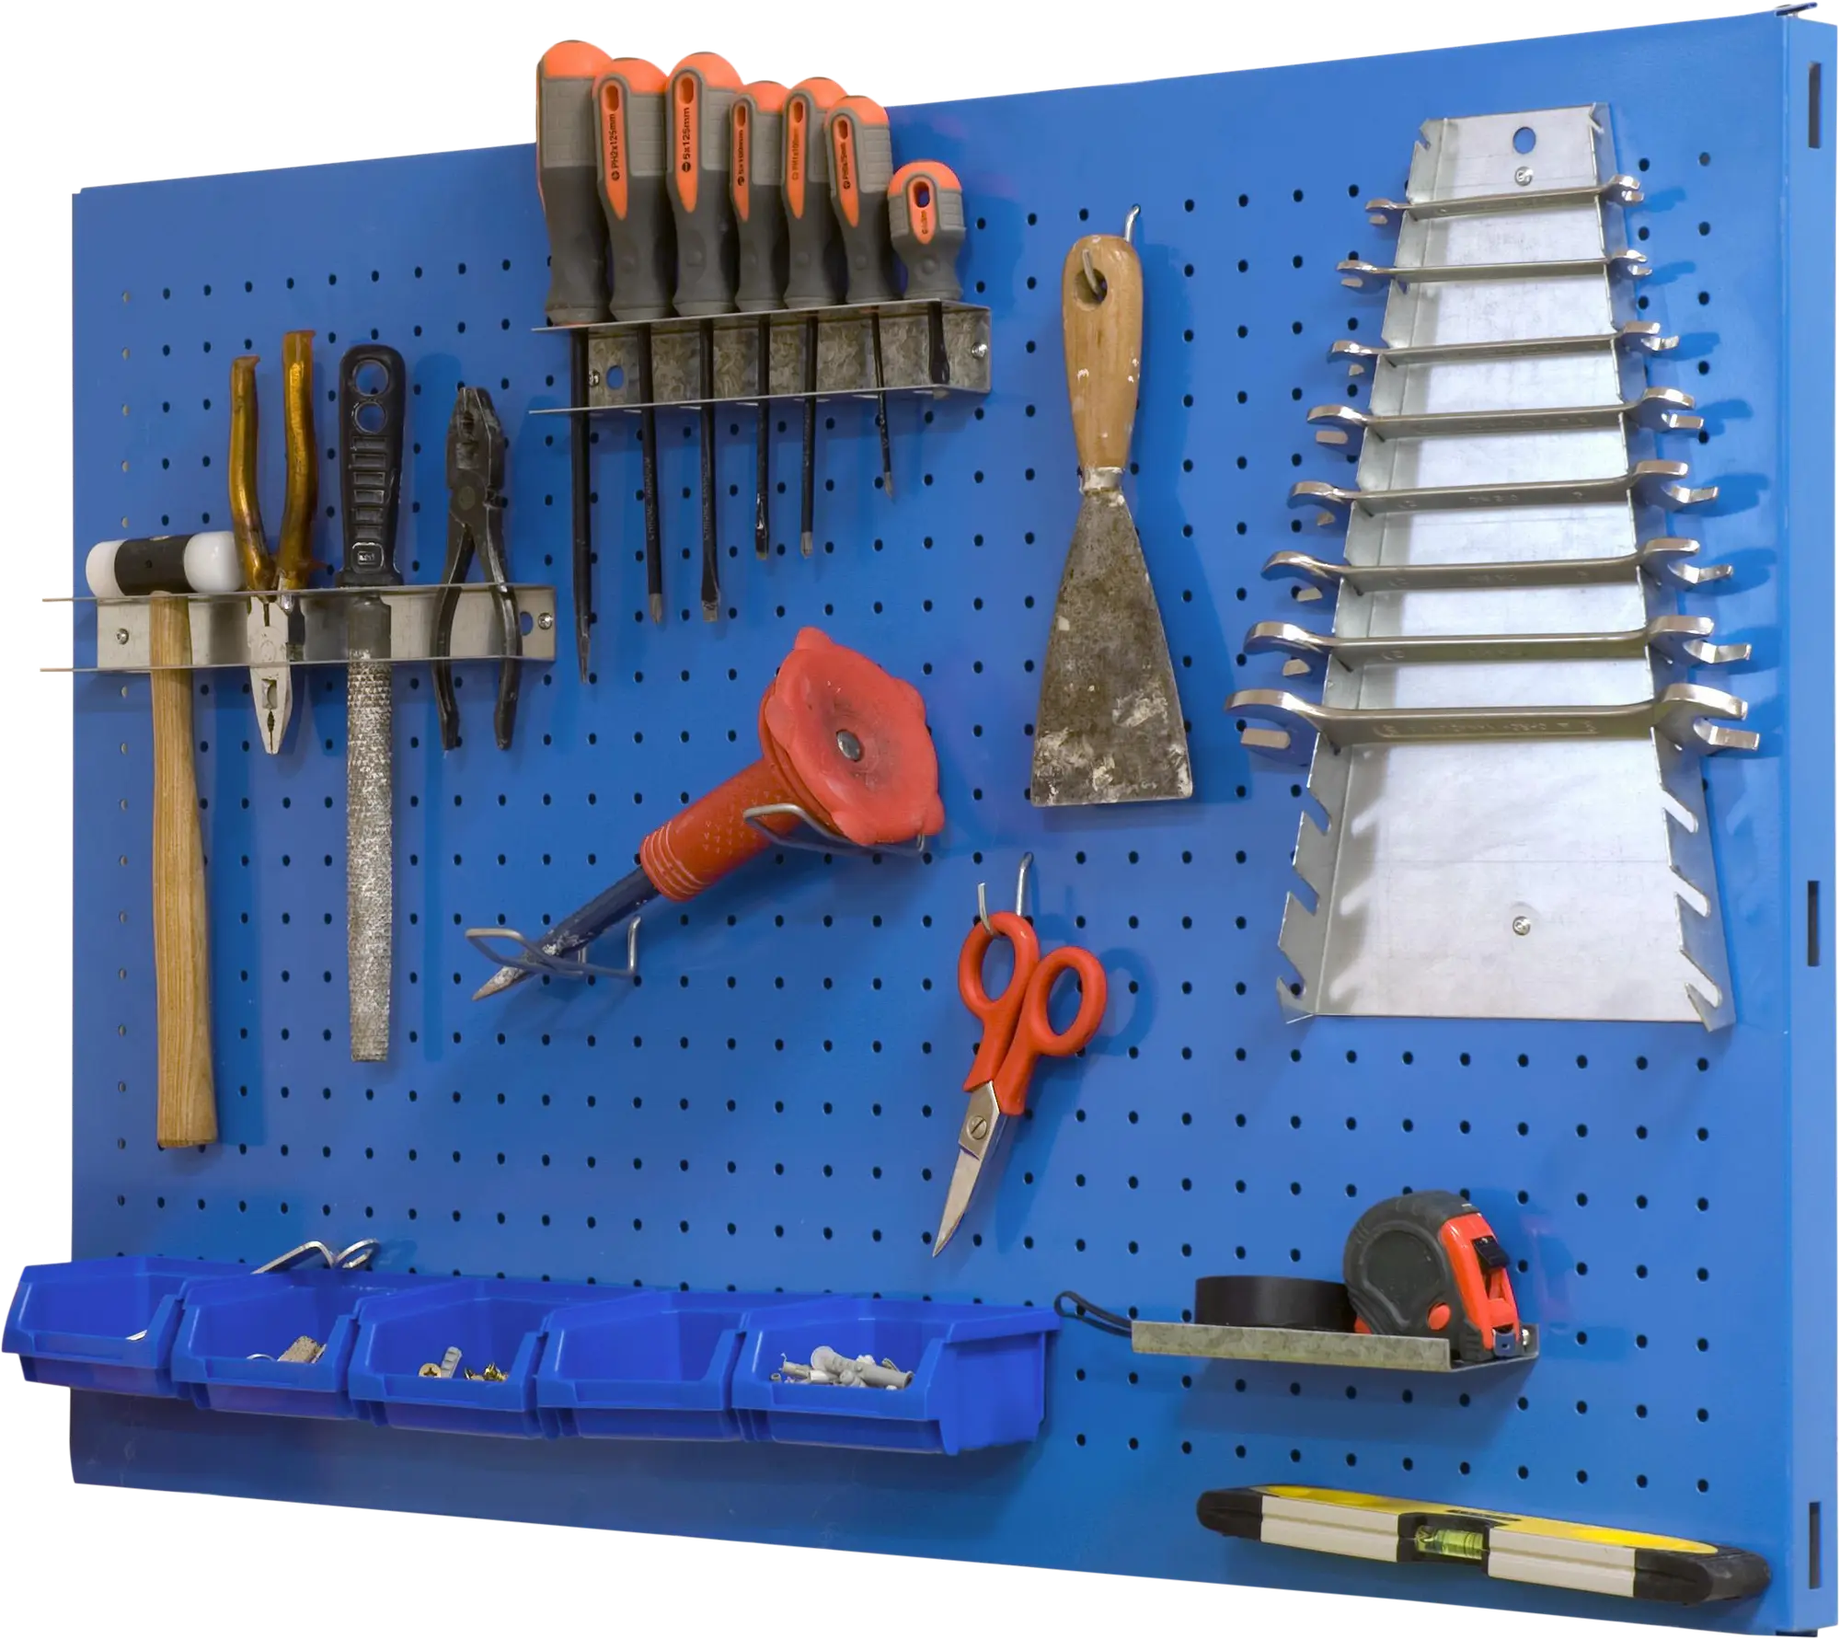 Cómo hacer un panel de herramientas casero?